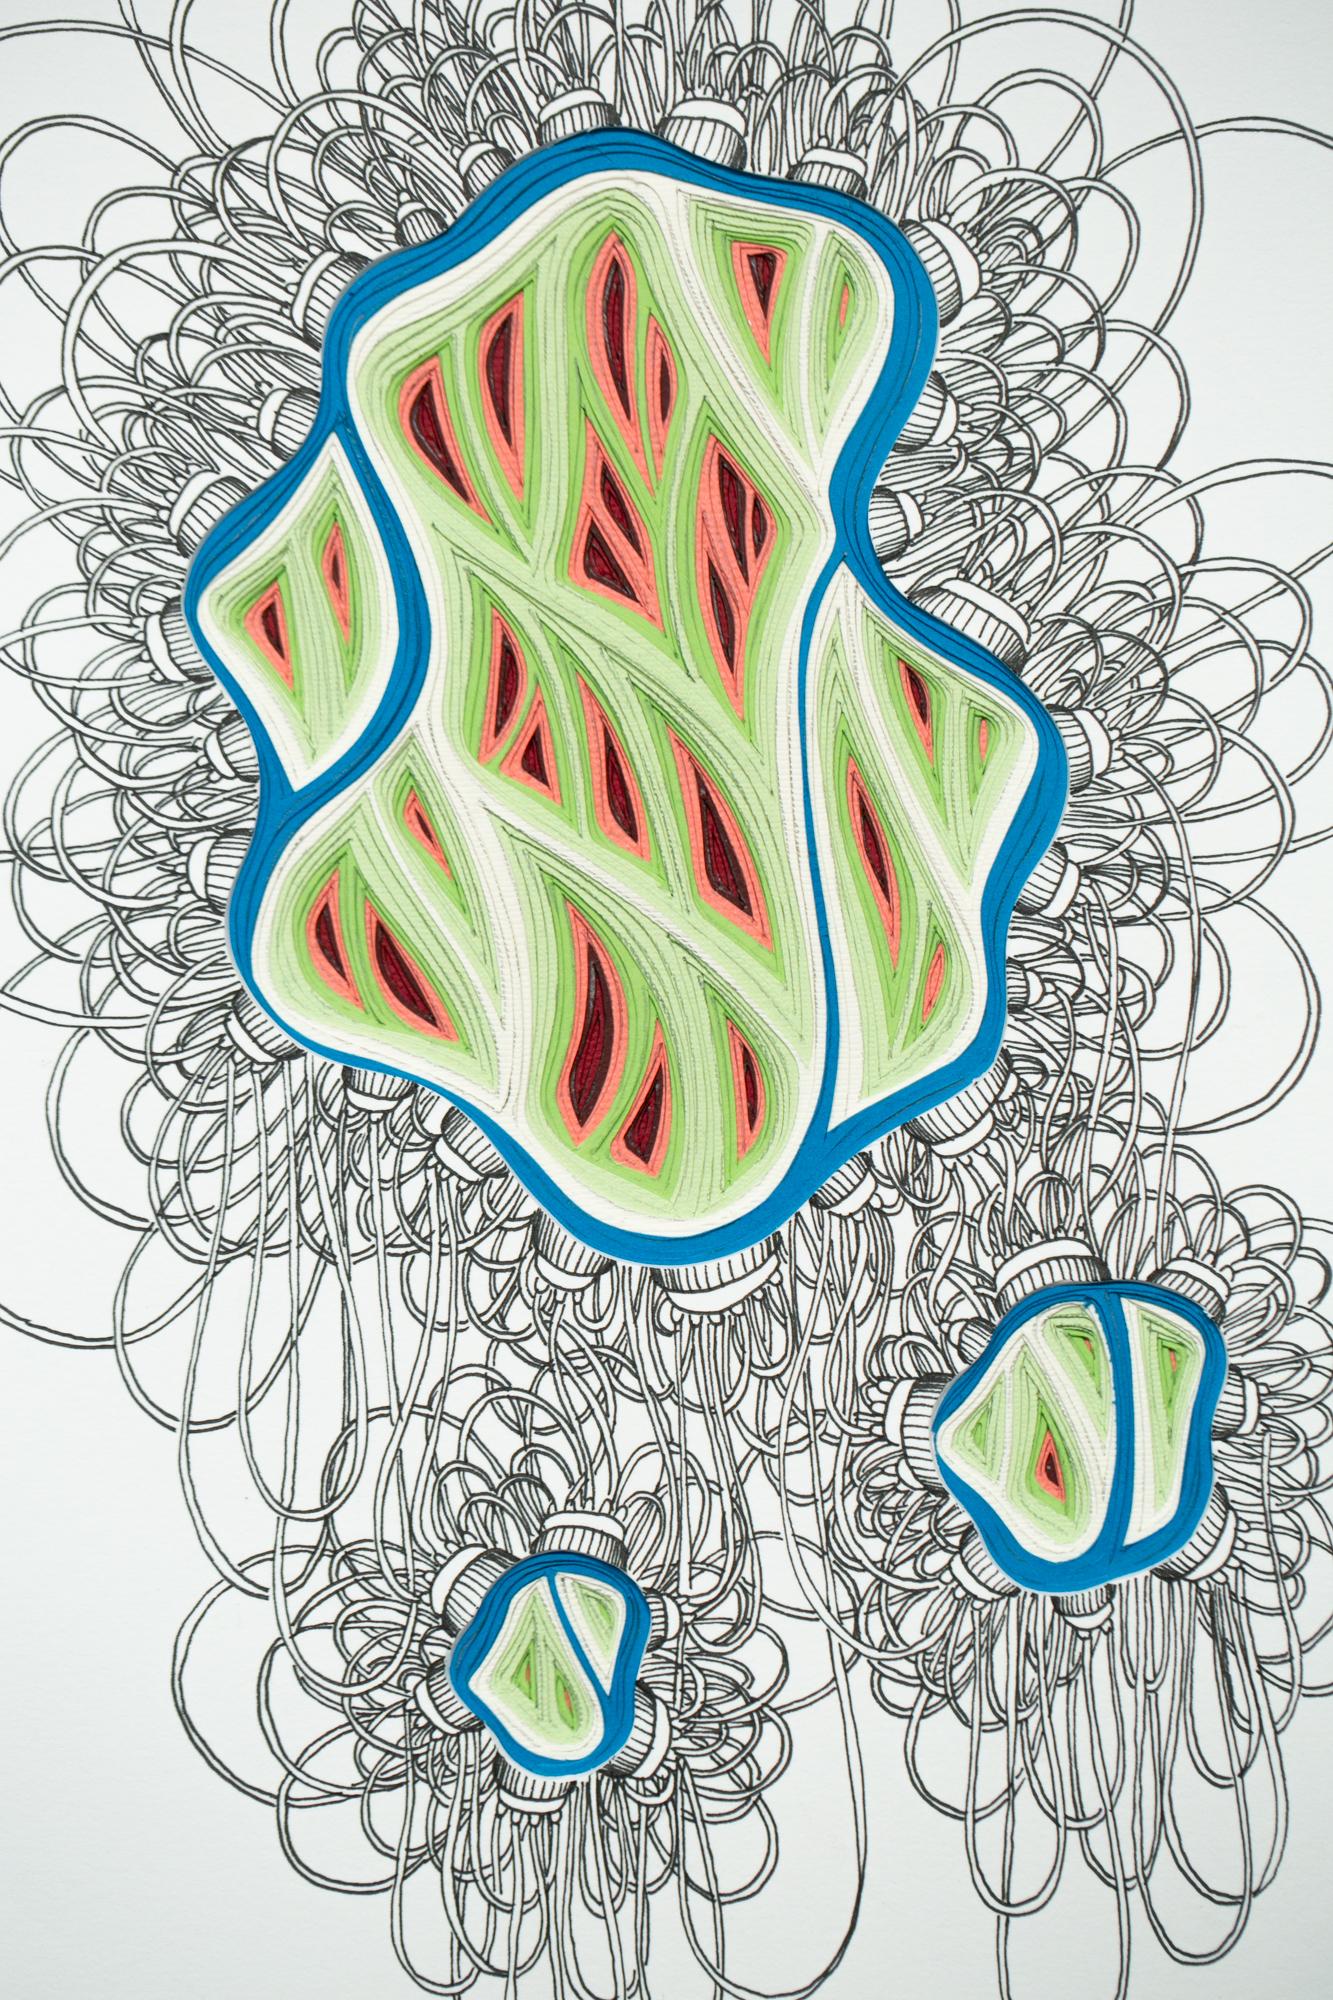 Phlebotomy-Bewegung #16 mit doppelter Schöpfkelle (Abstrakt), Art, von Charles Clary